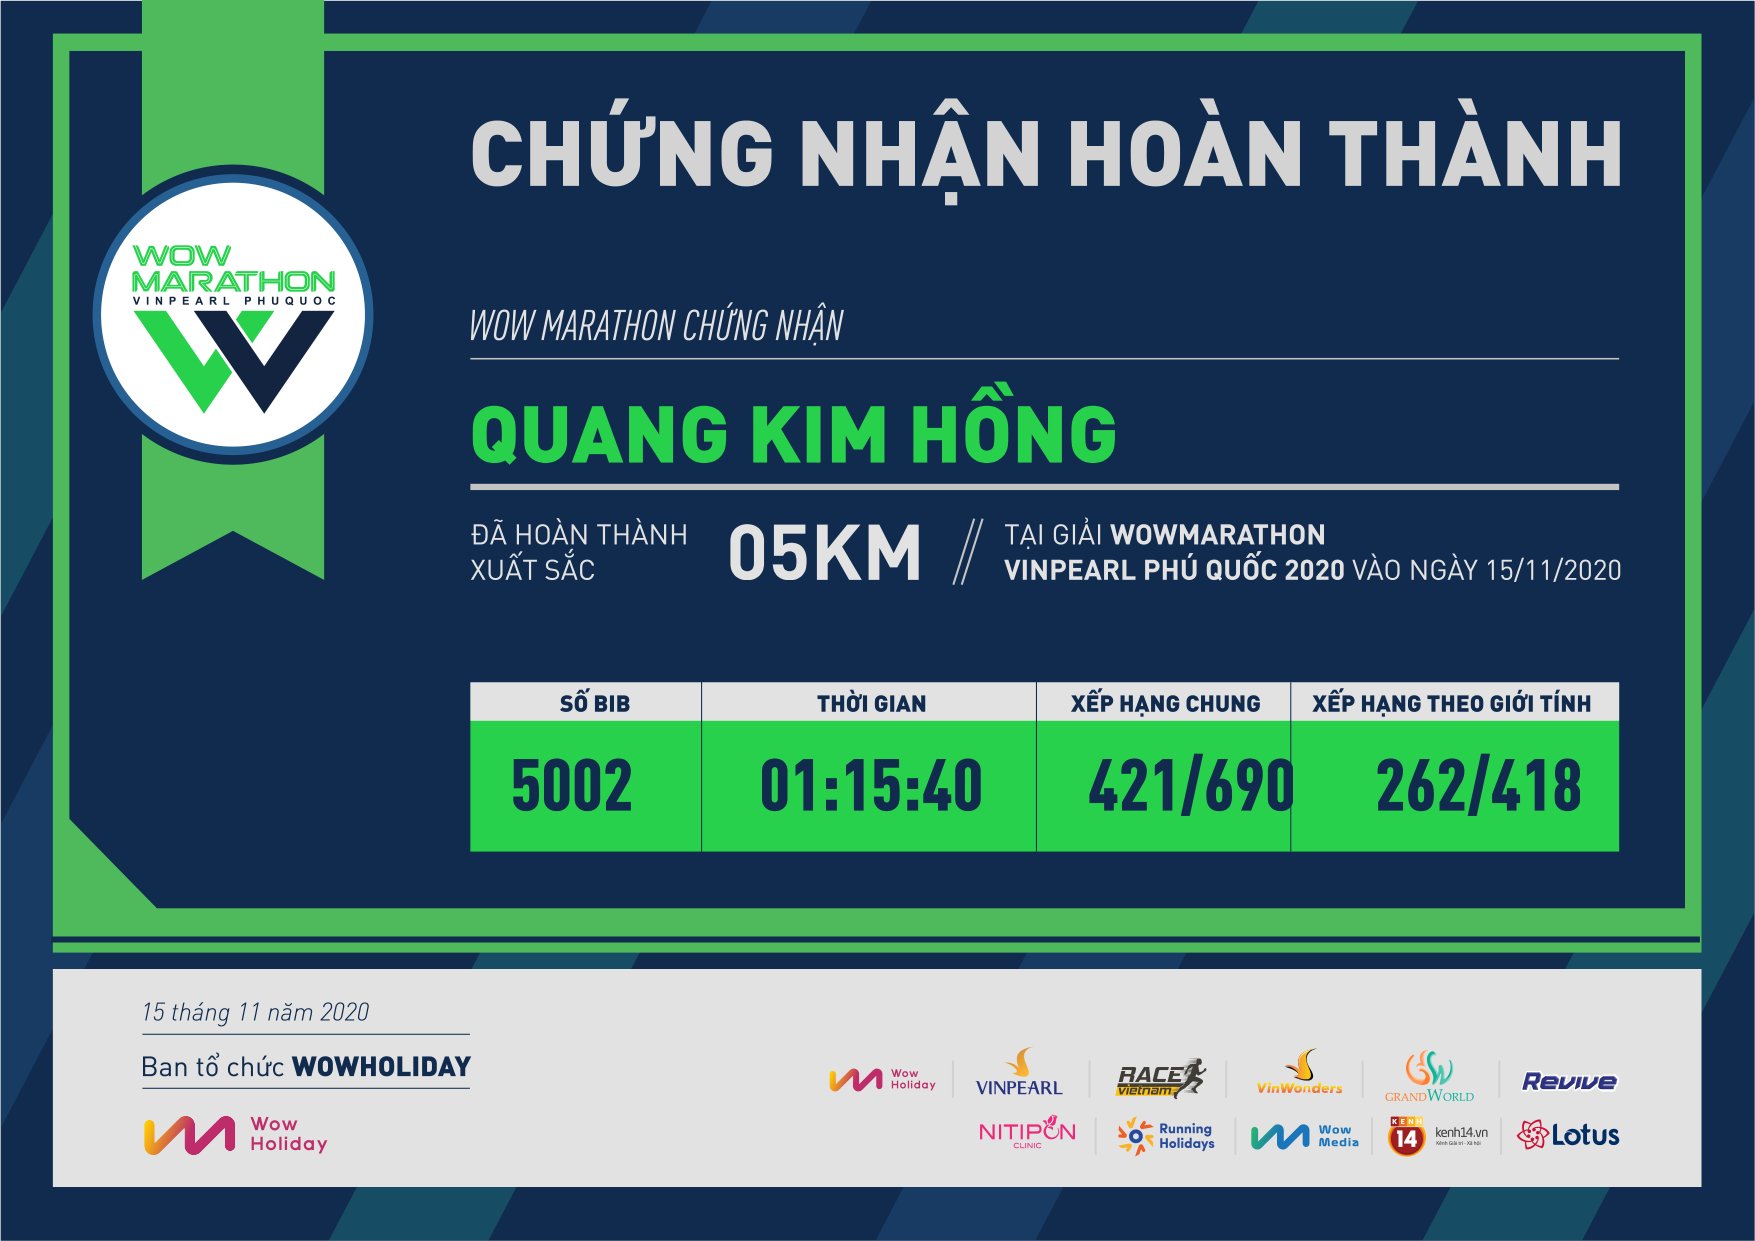 5002 - Quang Kim Hồng